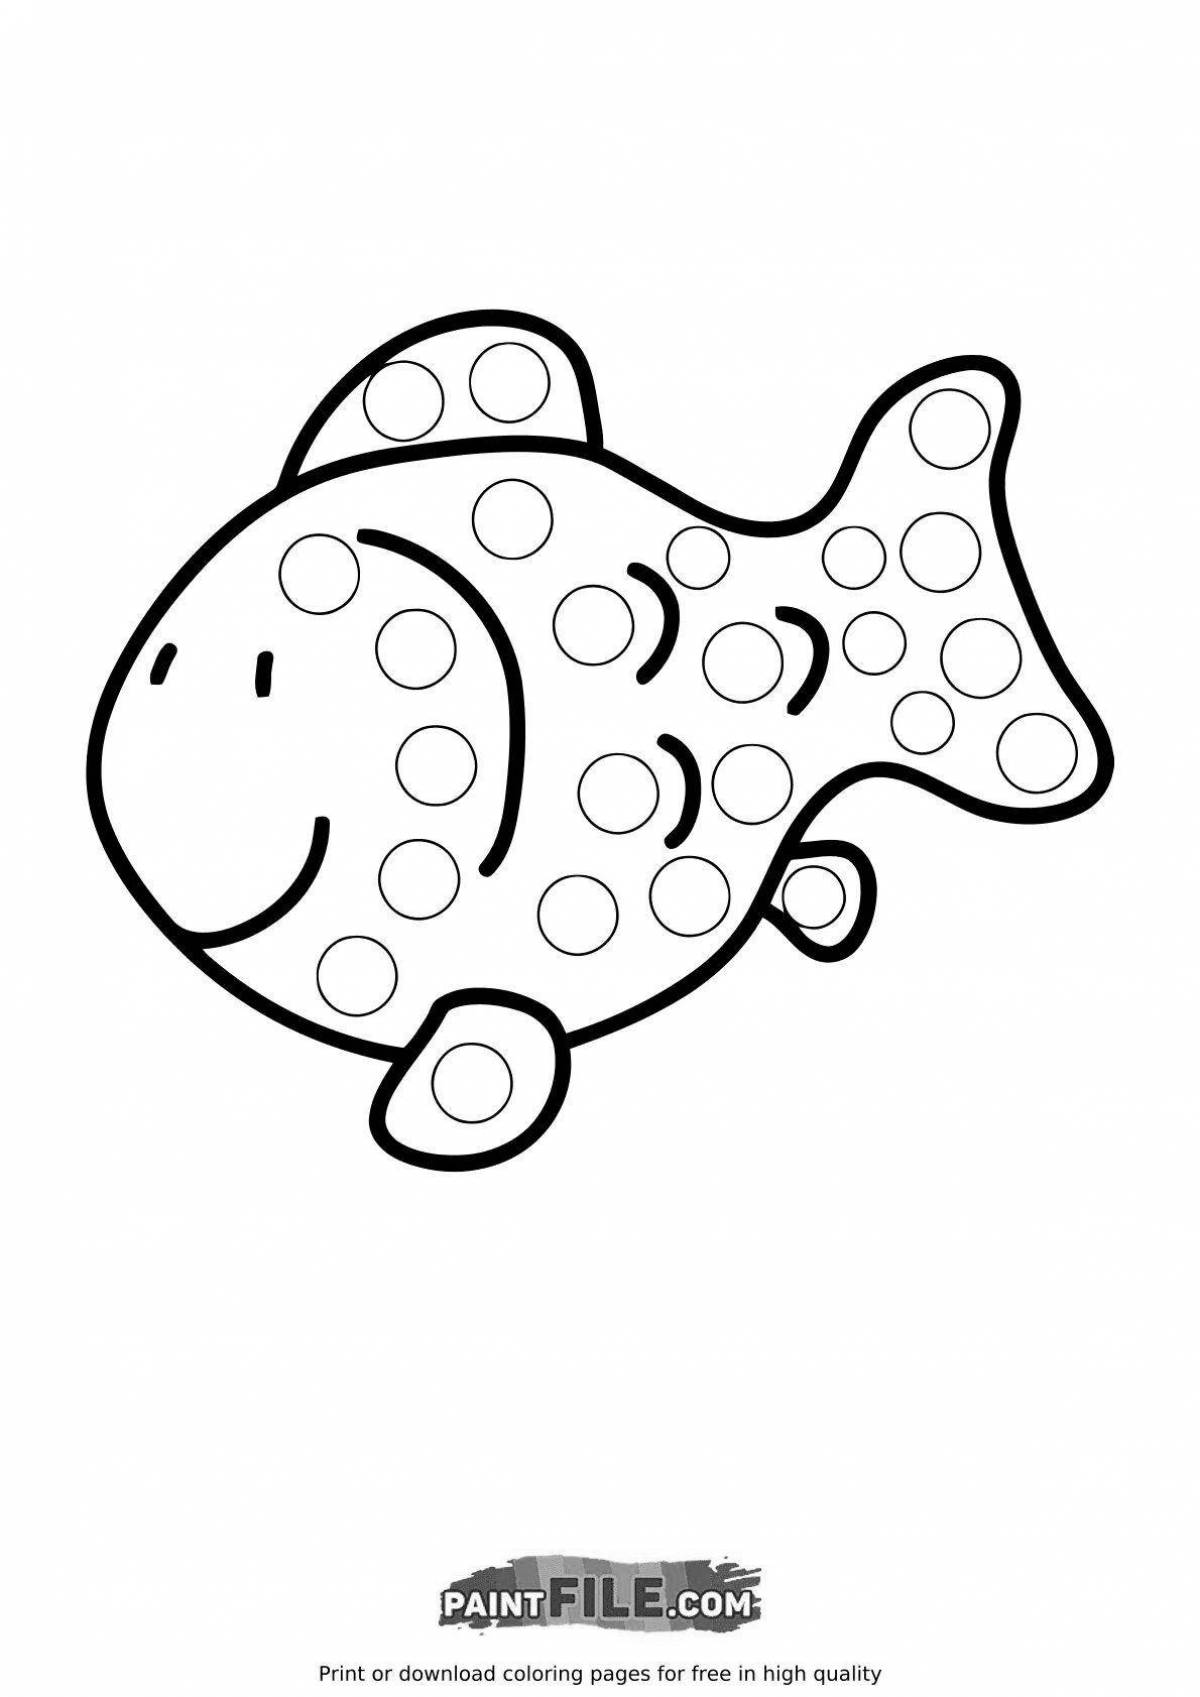 Раскраска ослепительная рыба-шар